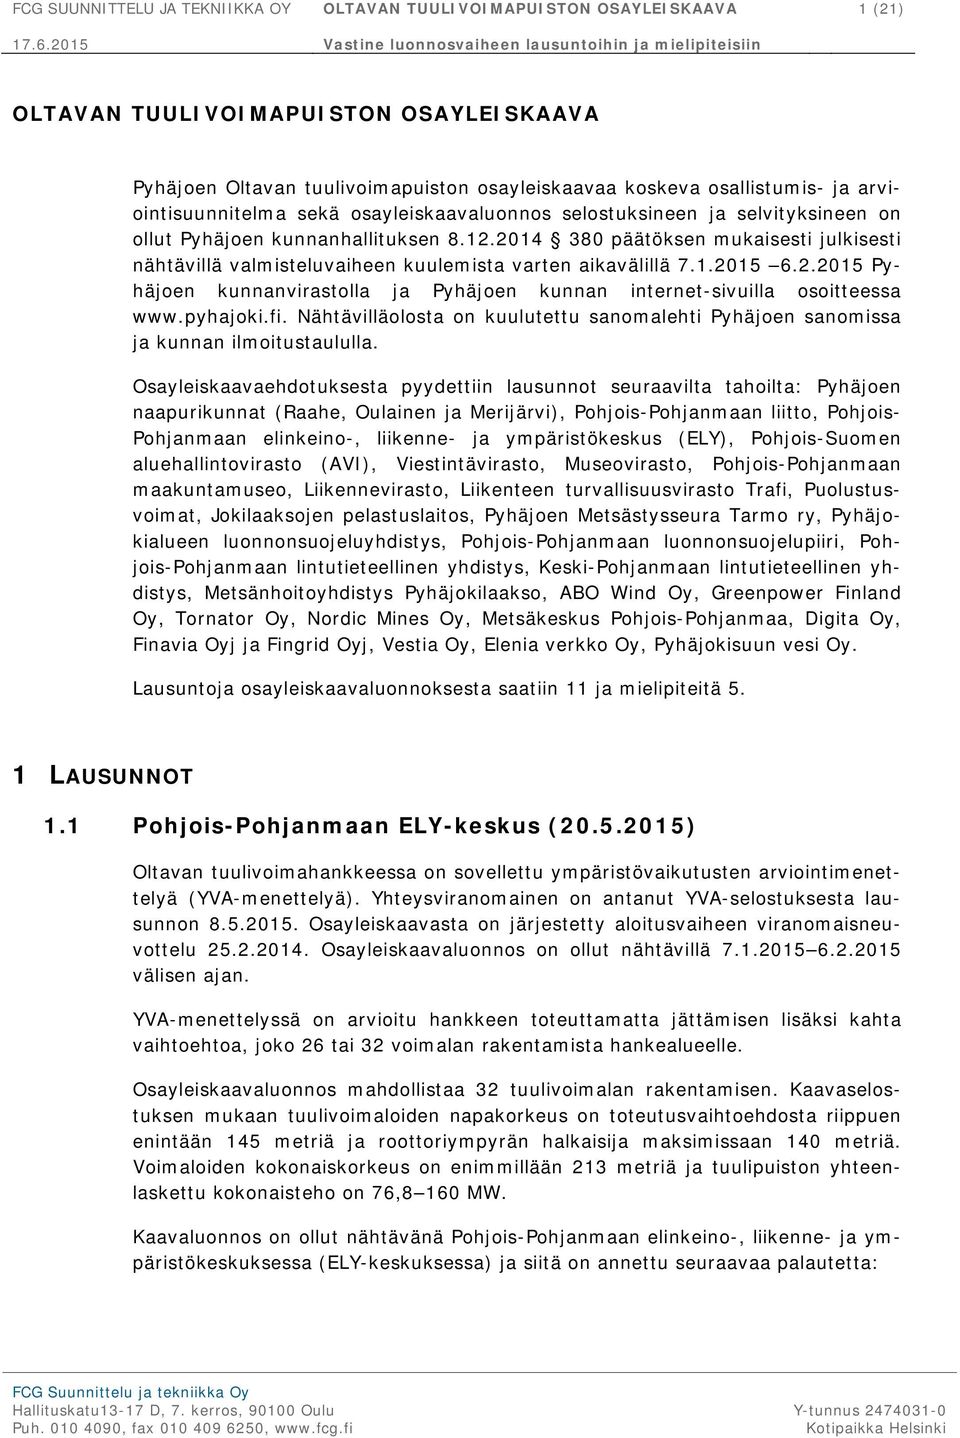 2014 380 päätöksen mukaisesti julkisesti nähtävillä valmisteluvaiheen kuulemista varten aikavälillä 7.1.2015 6.2.2015 Pyhäjoen kunnanvirastolla ja Pyhäjoen kunnan internet-sivuilla osoitteessa www.